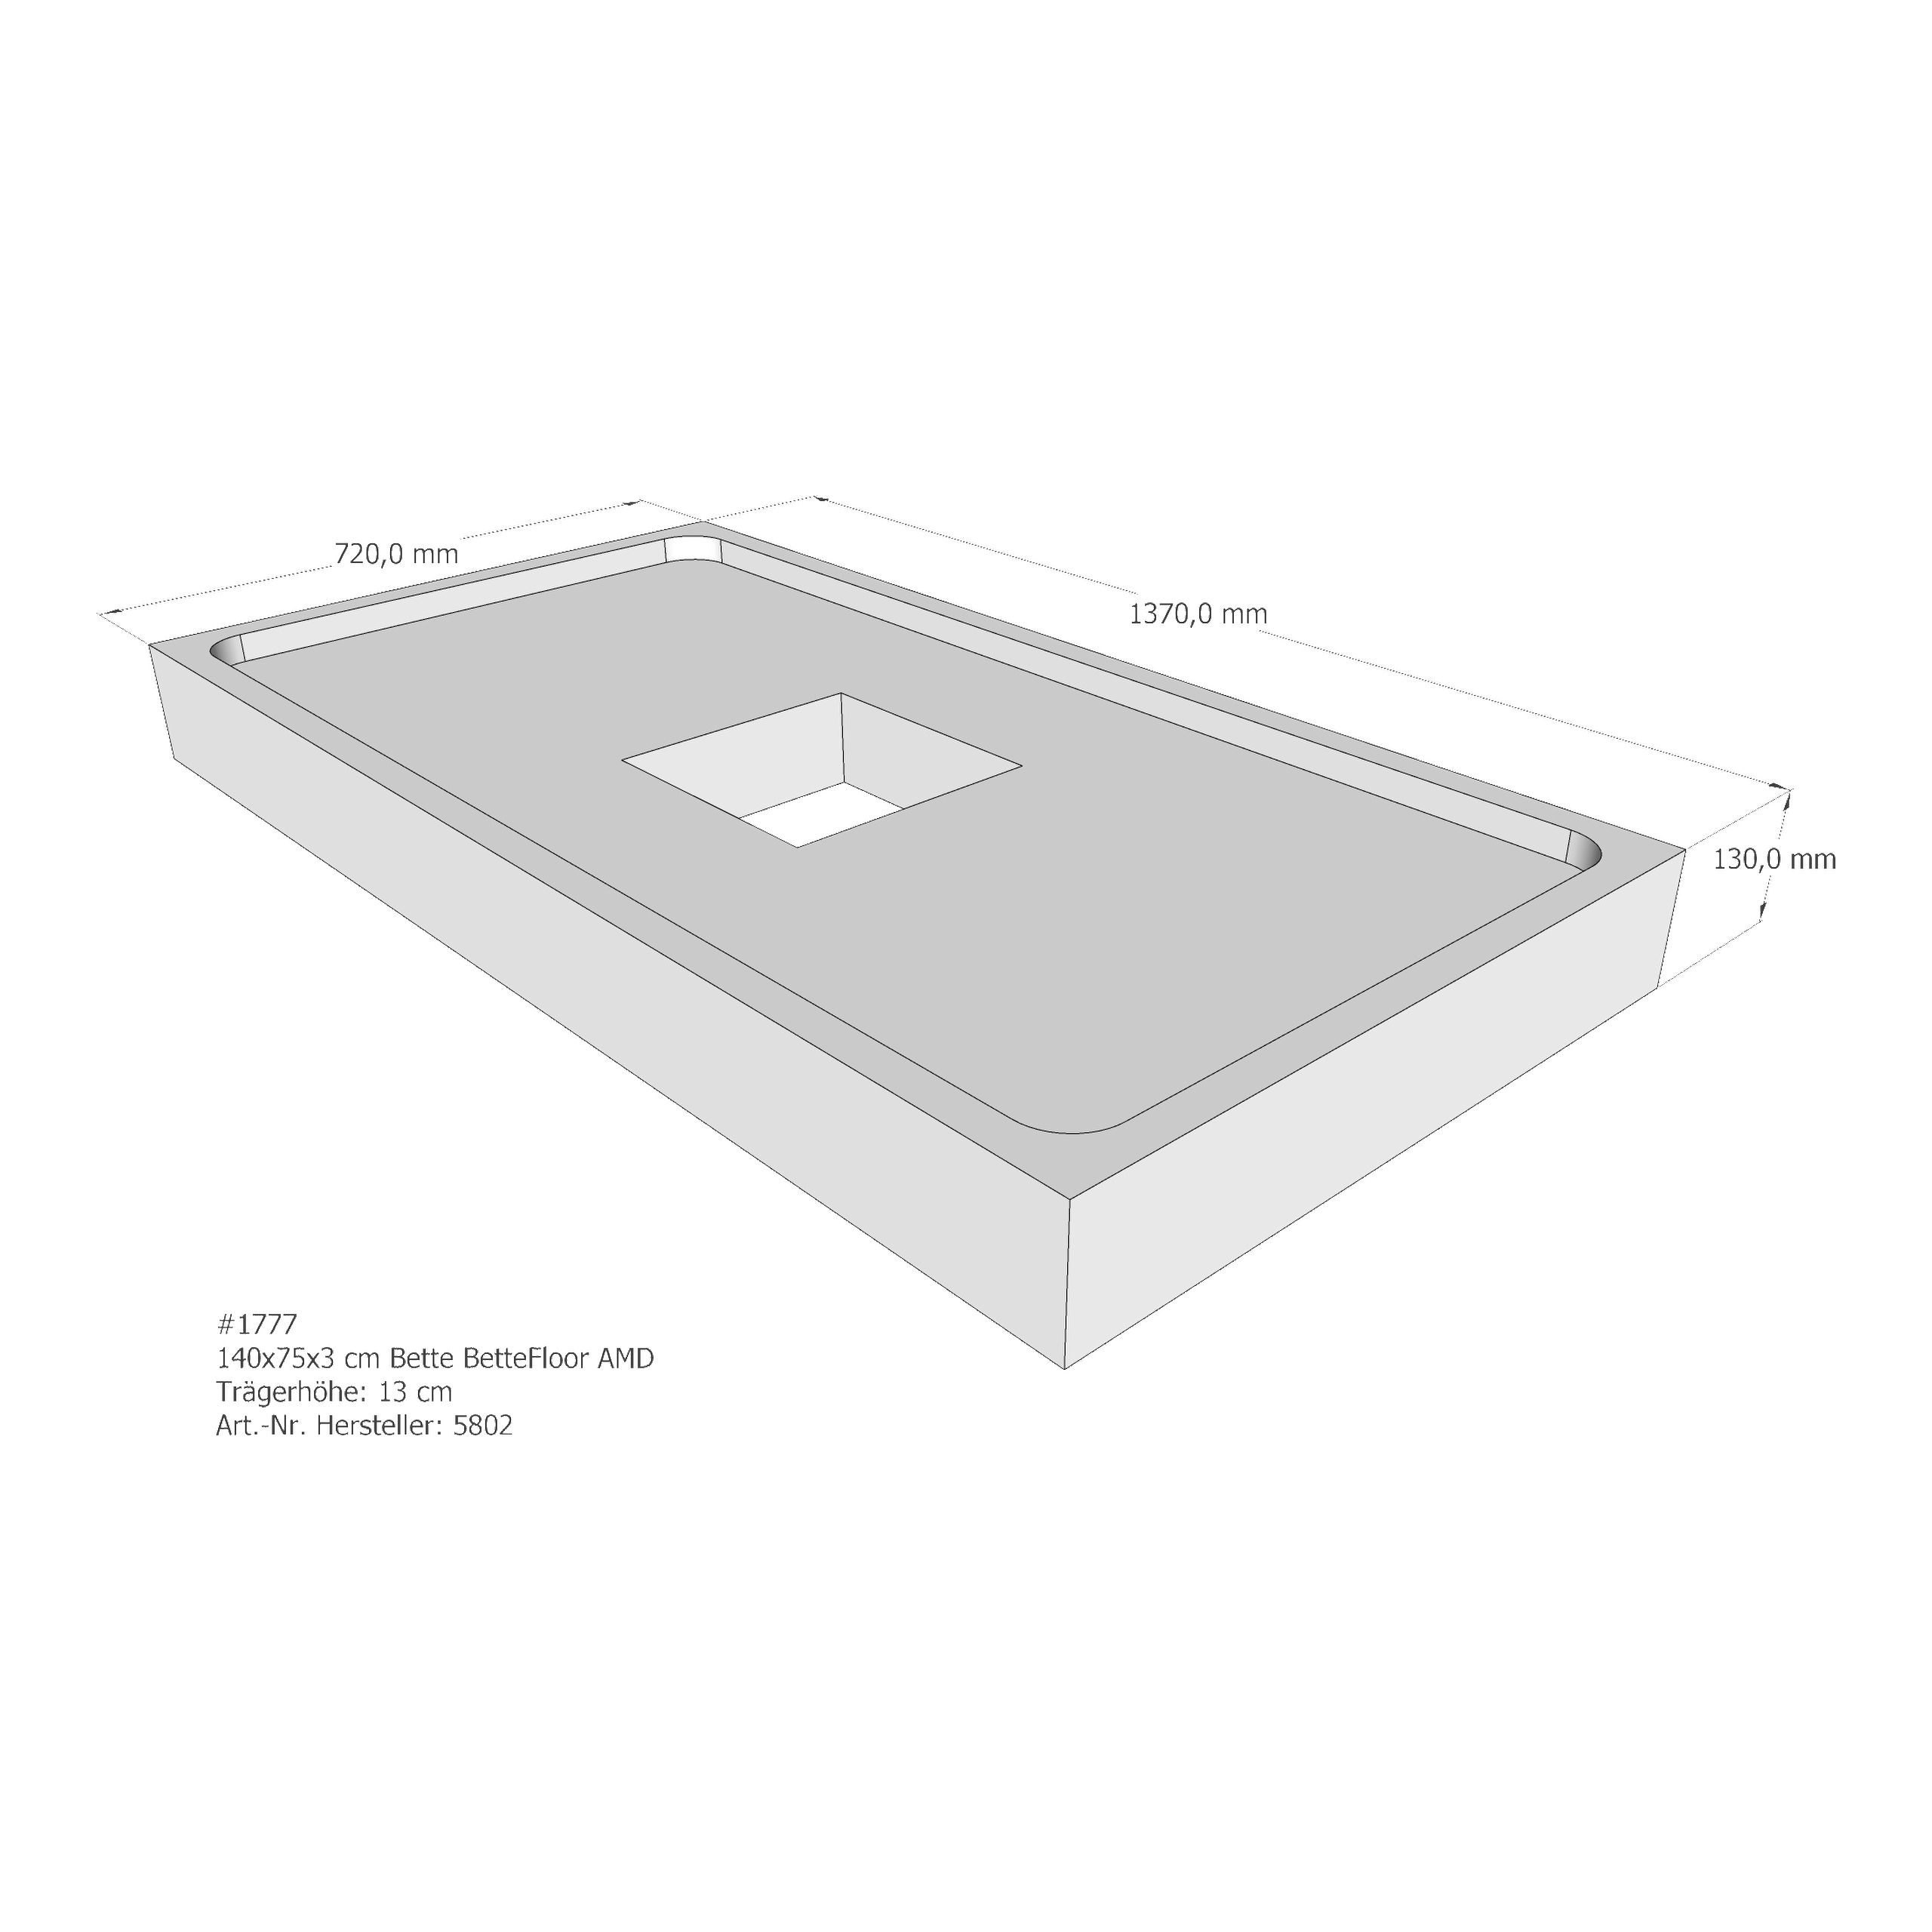 Duschwannenträger Bette BetteFloor 140x75x3 cm AMD